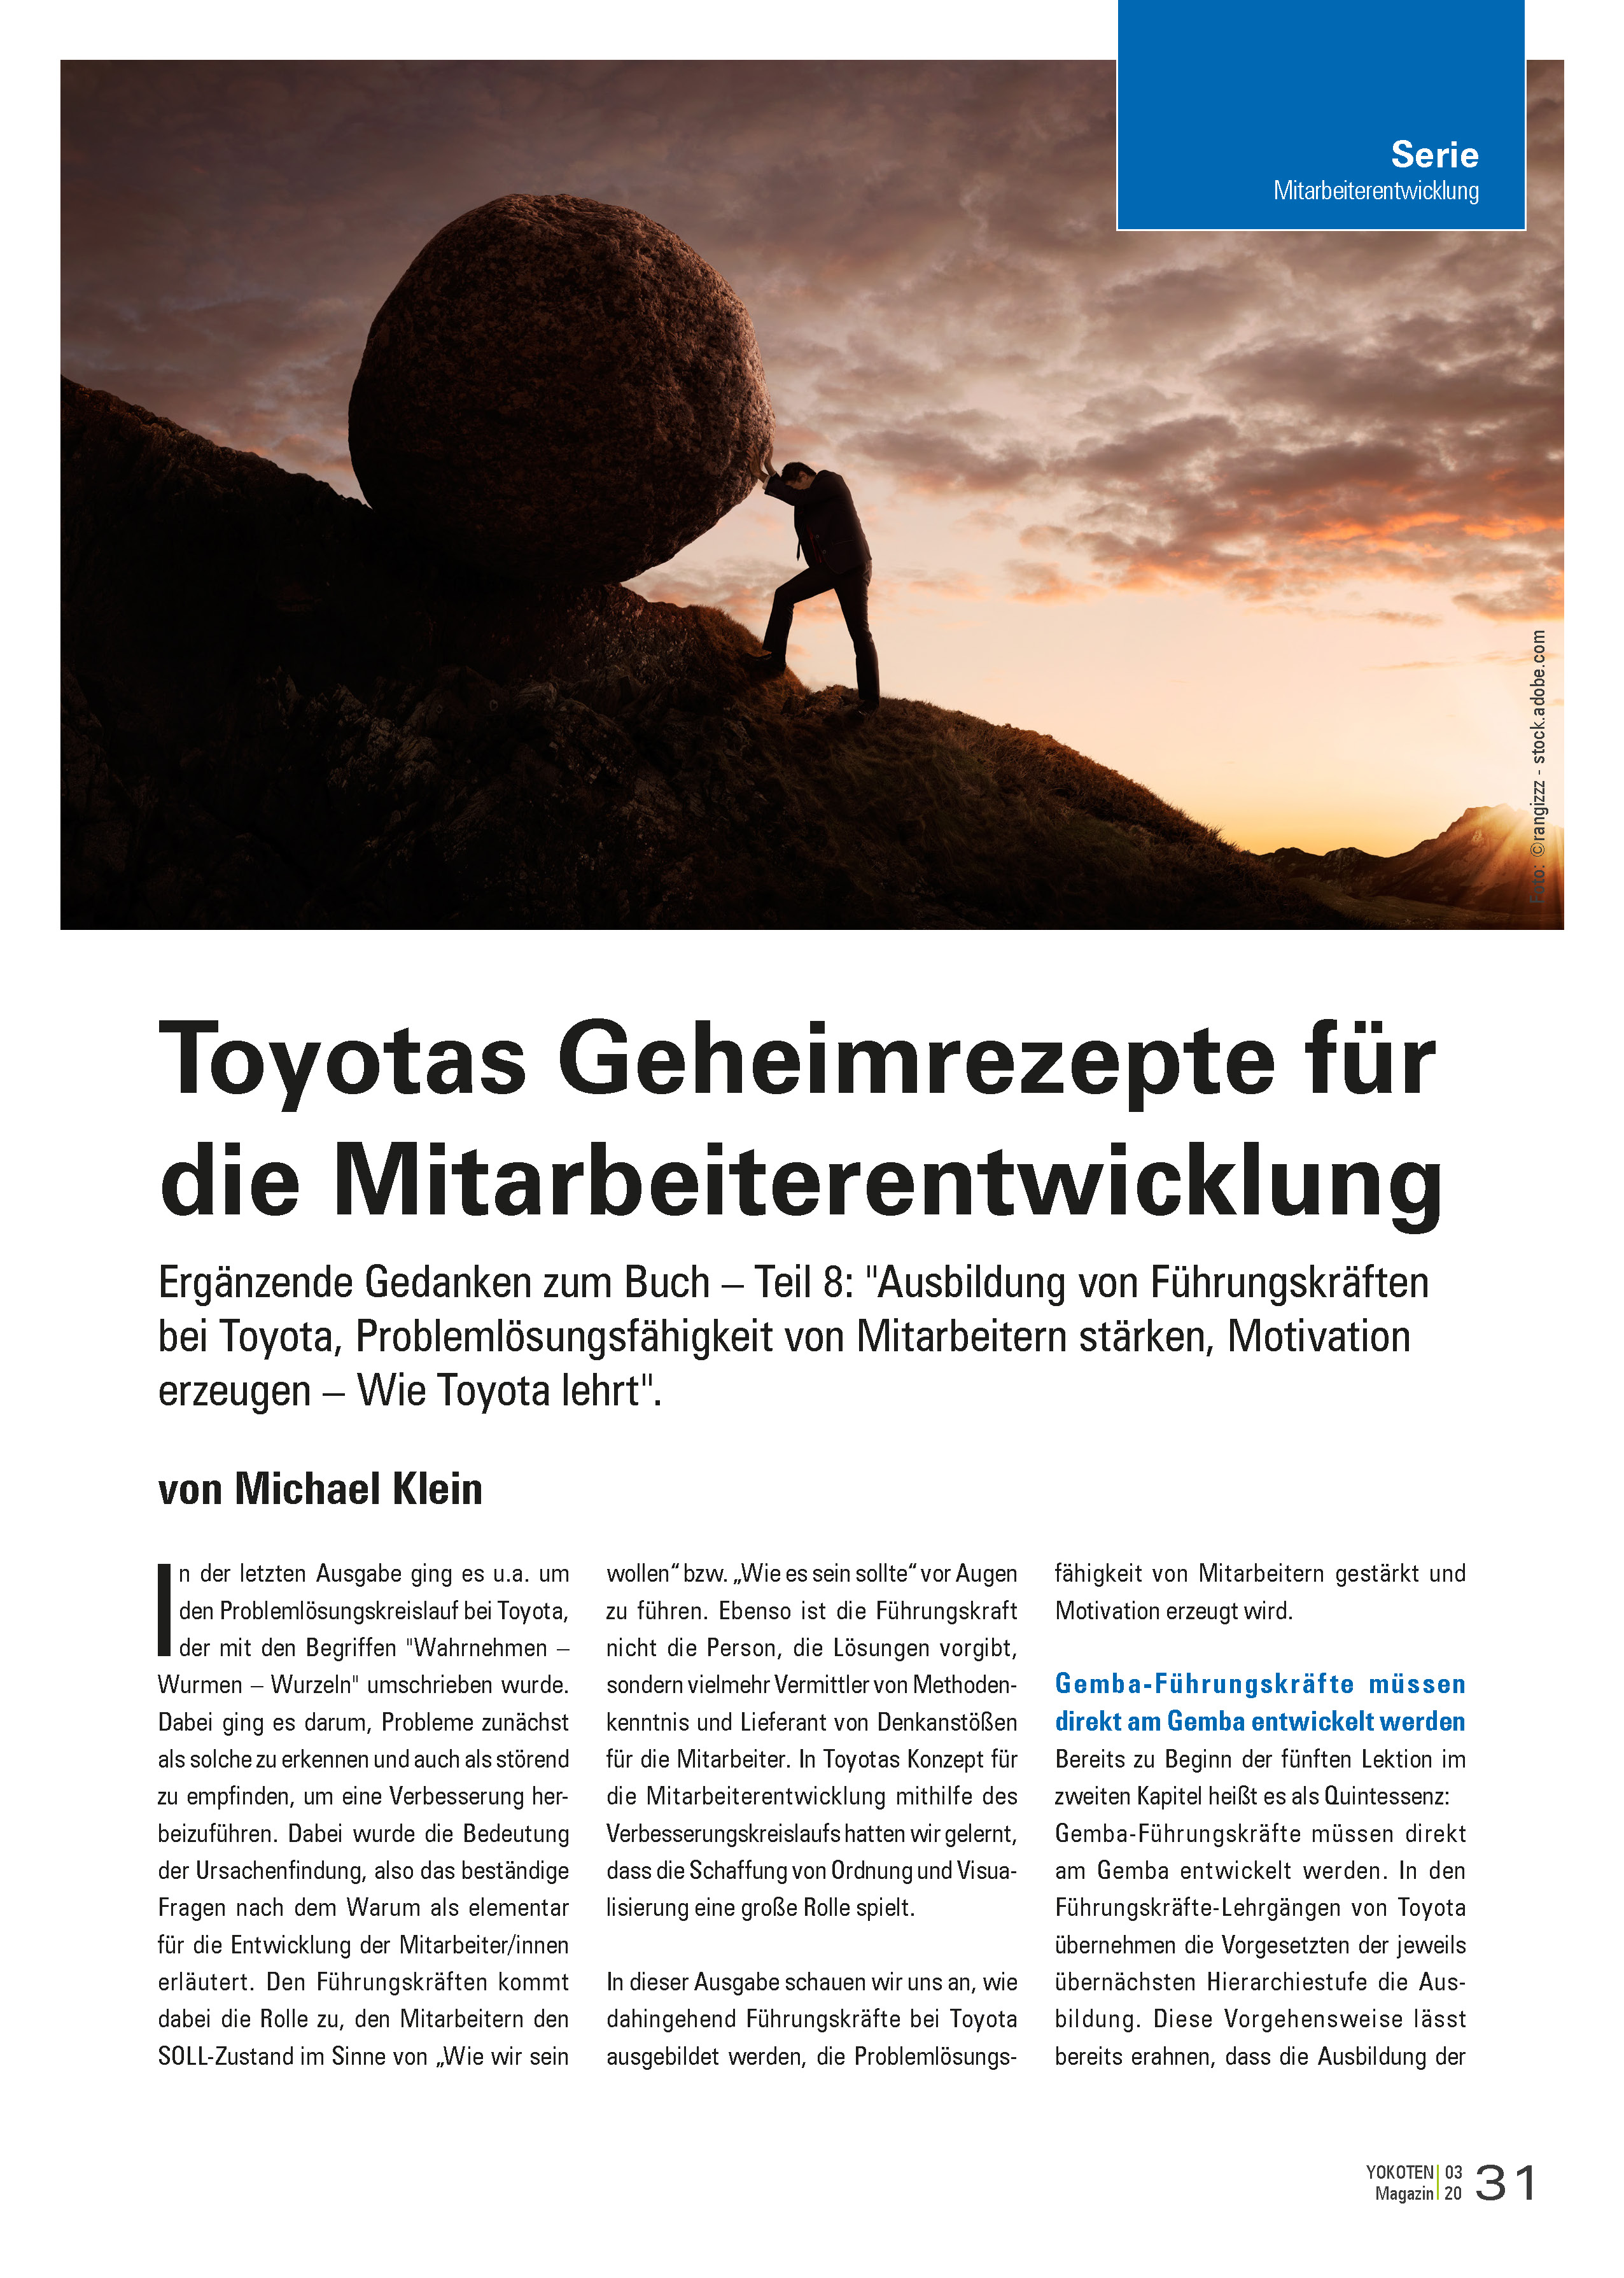 Toyotas Geheimrezepte für die Mitarbeiterentwicklung - Artikel aus Fachmagazin YOKOTEN 2020-03